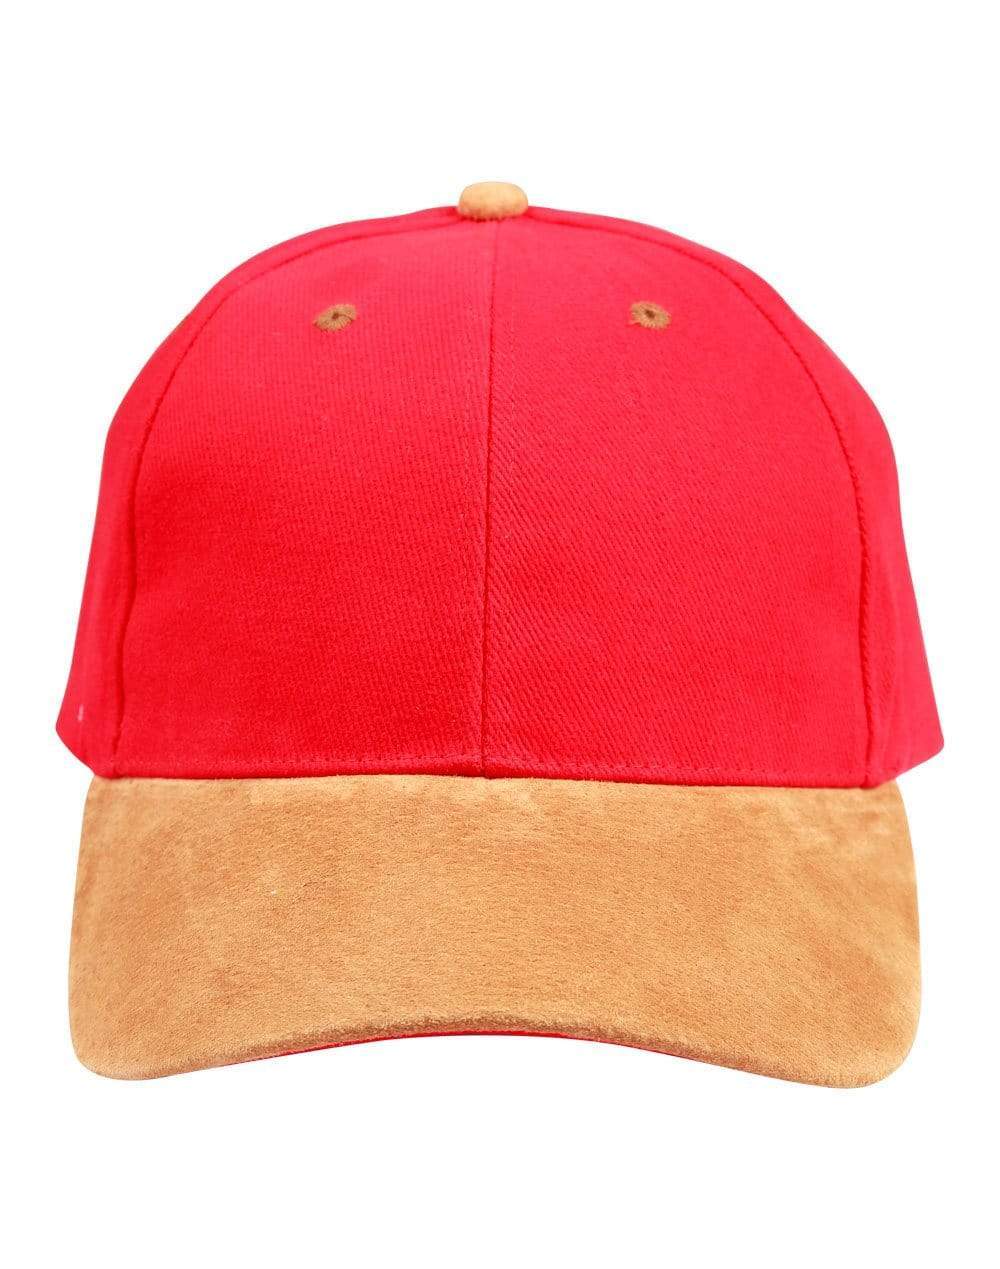 Winning Spirit Active Wear Red/Tan / One size Suede Peak Cap Ch05